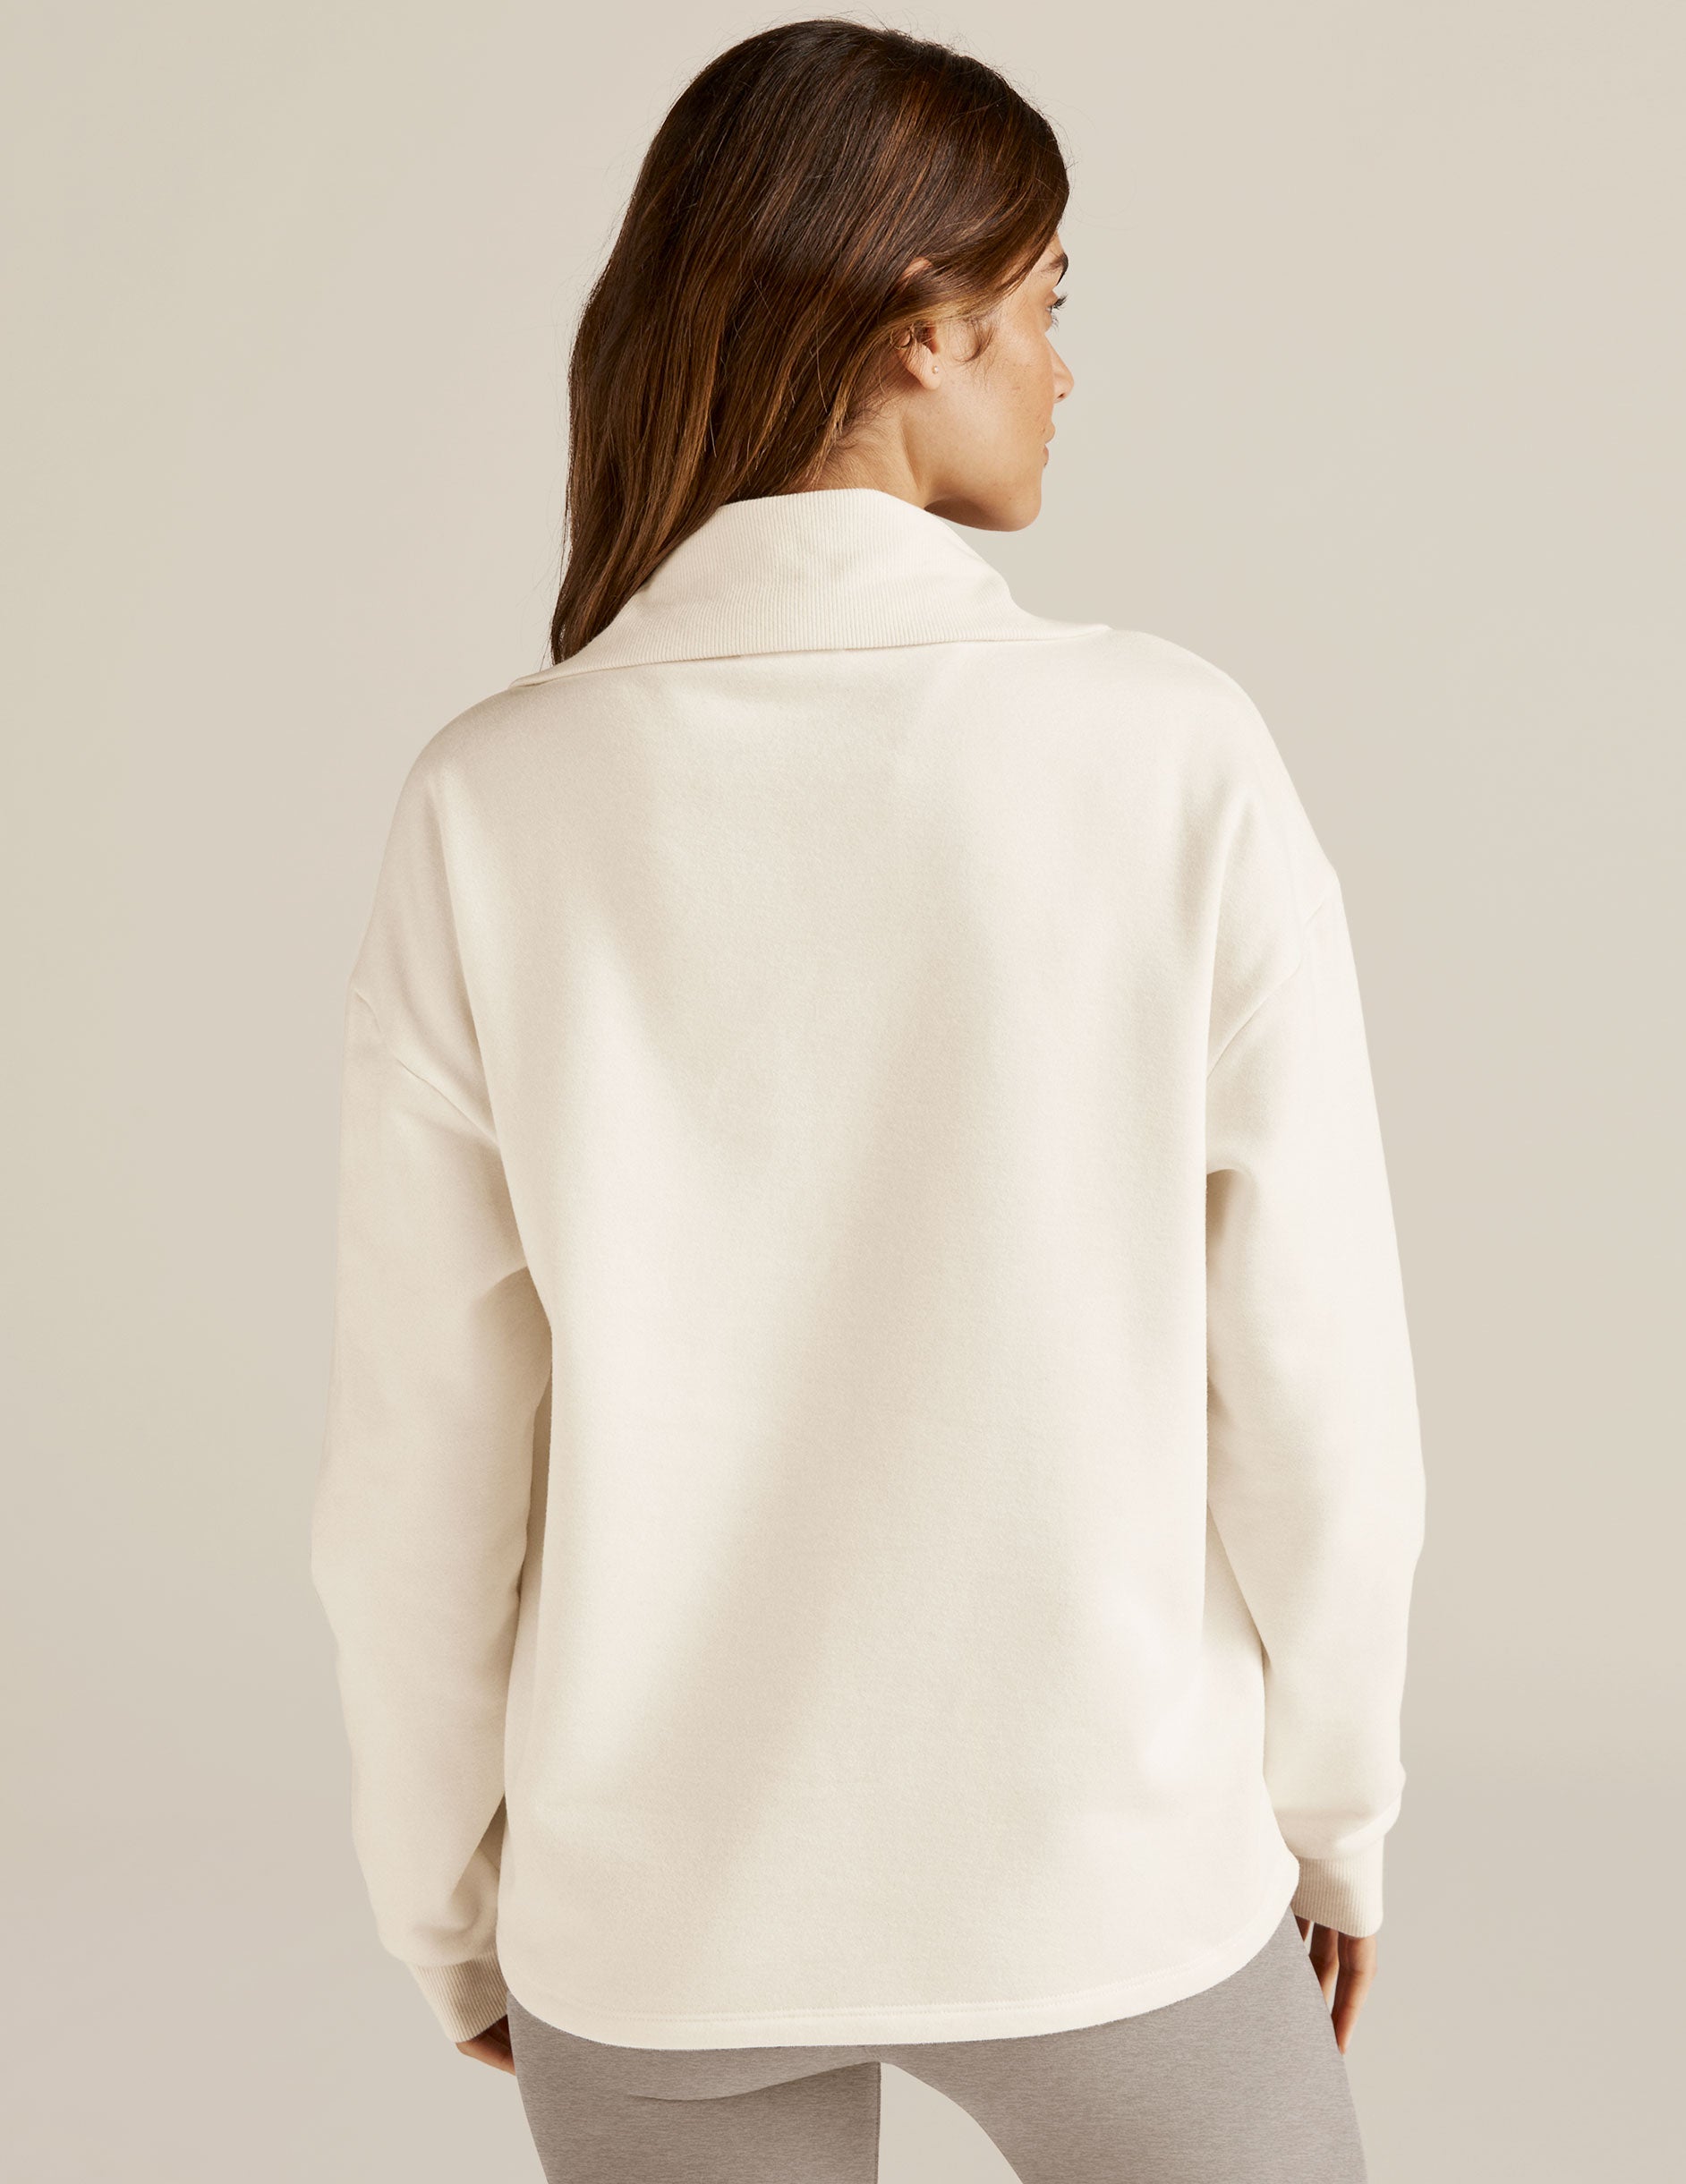 white quarter-zip fleece pullover. 